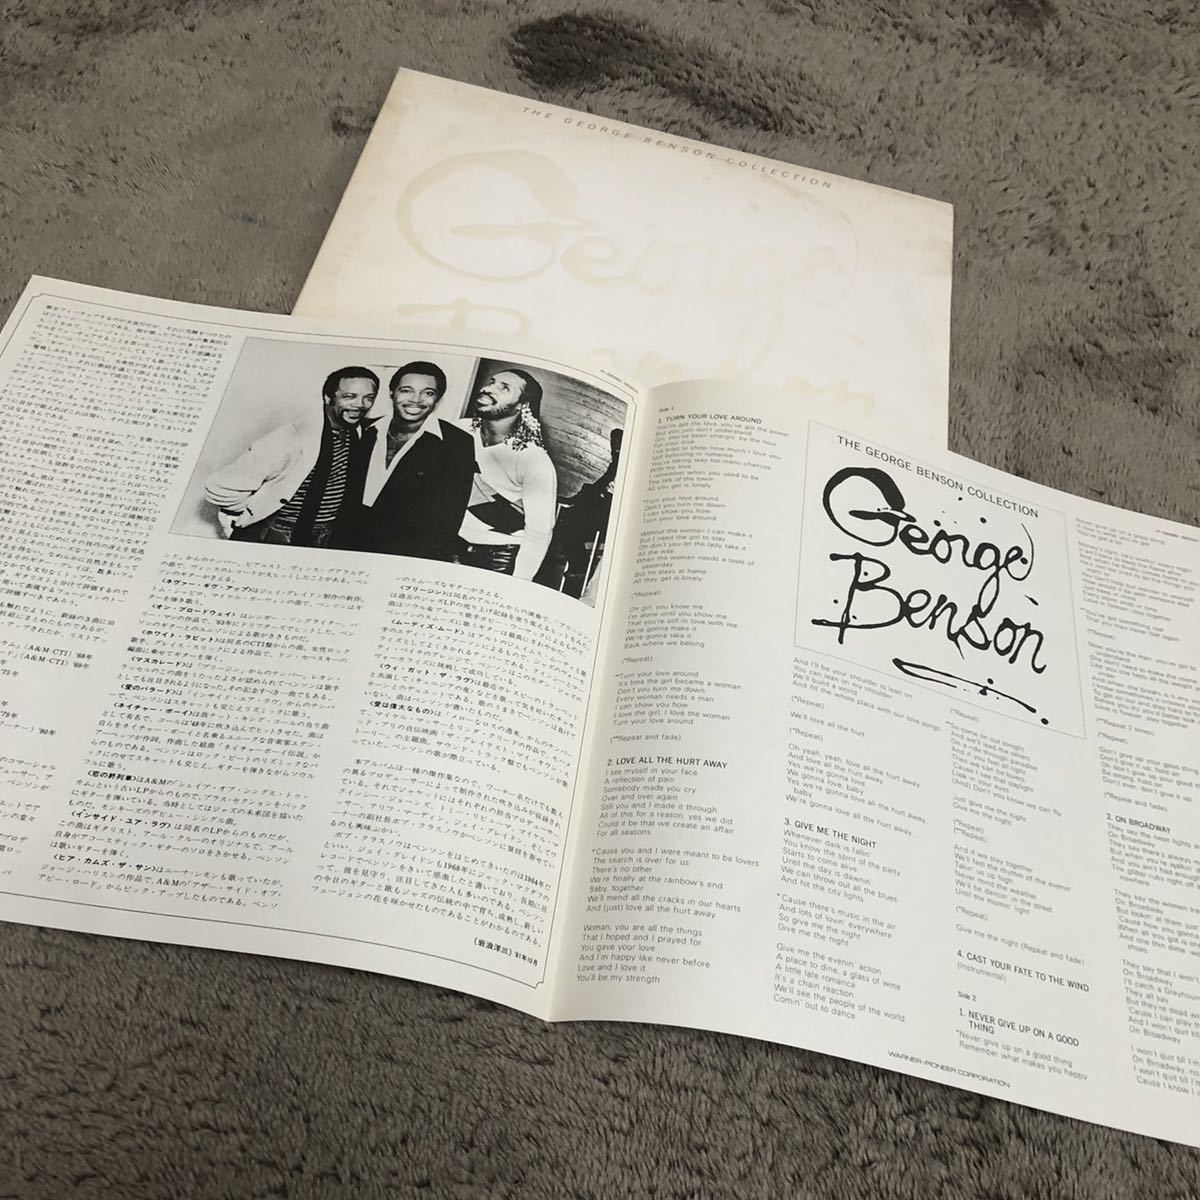 THE George Benson ジョージベンソン / G.B コレクション / 2LP 2枚組レコード / P5600W /ライナー冊子有/洋楽ジャズ 洋楽フュージョン/_画像4